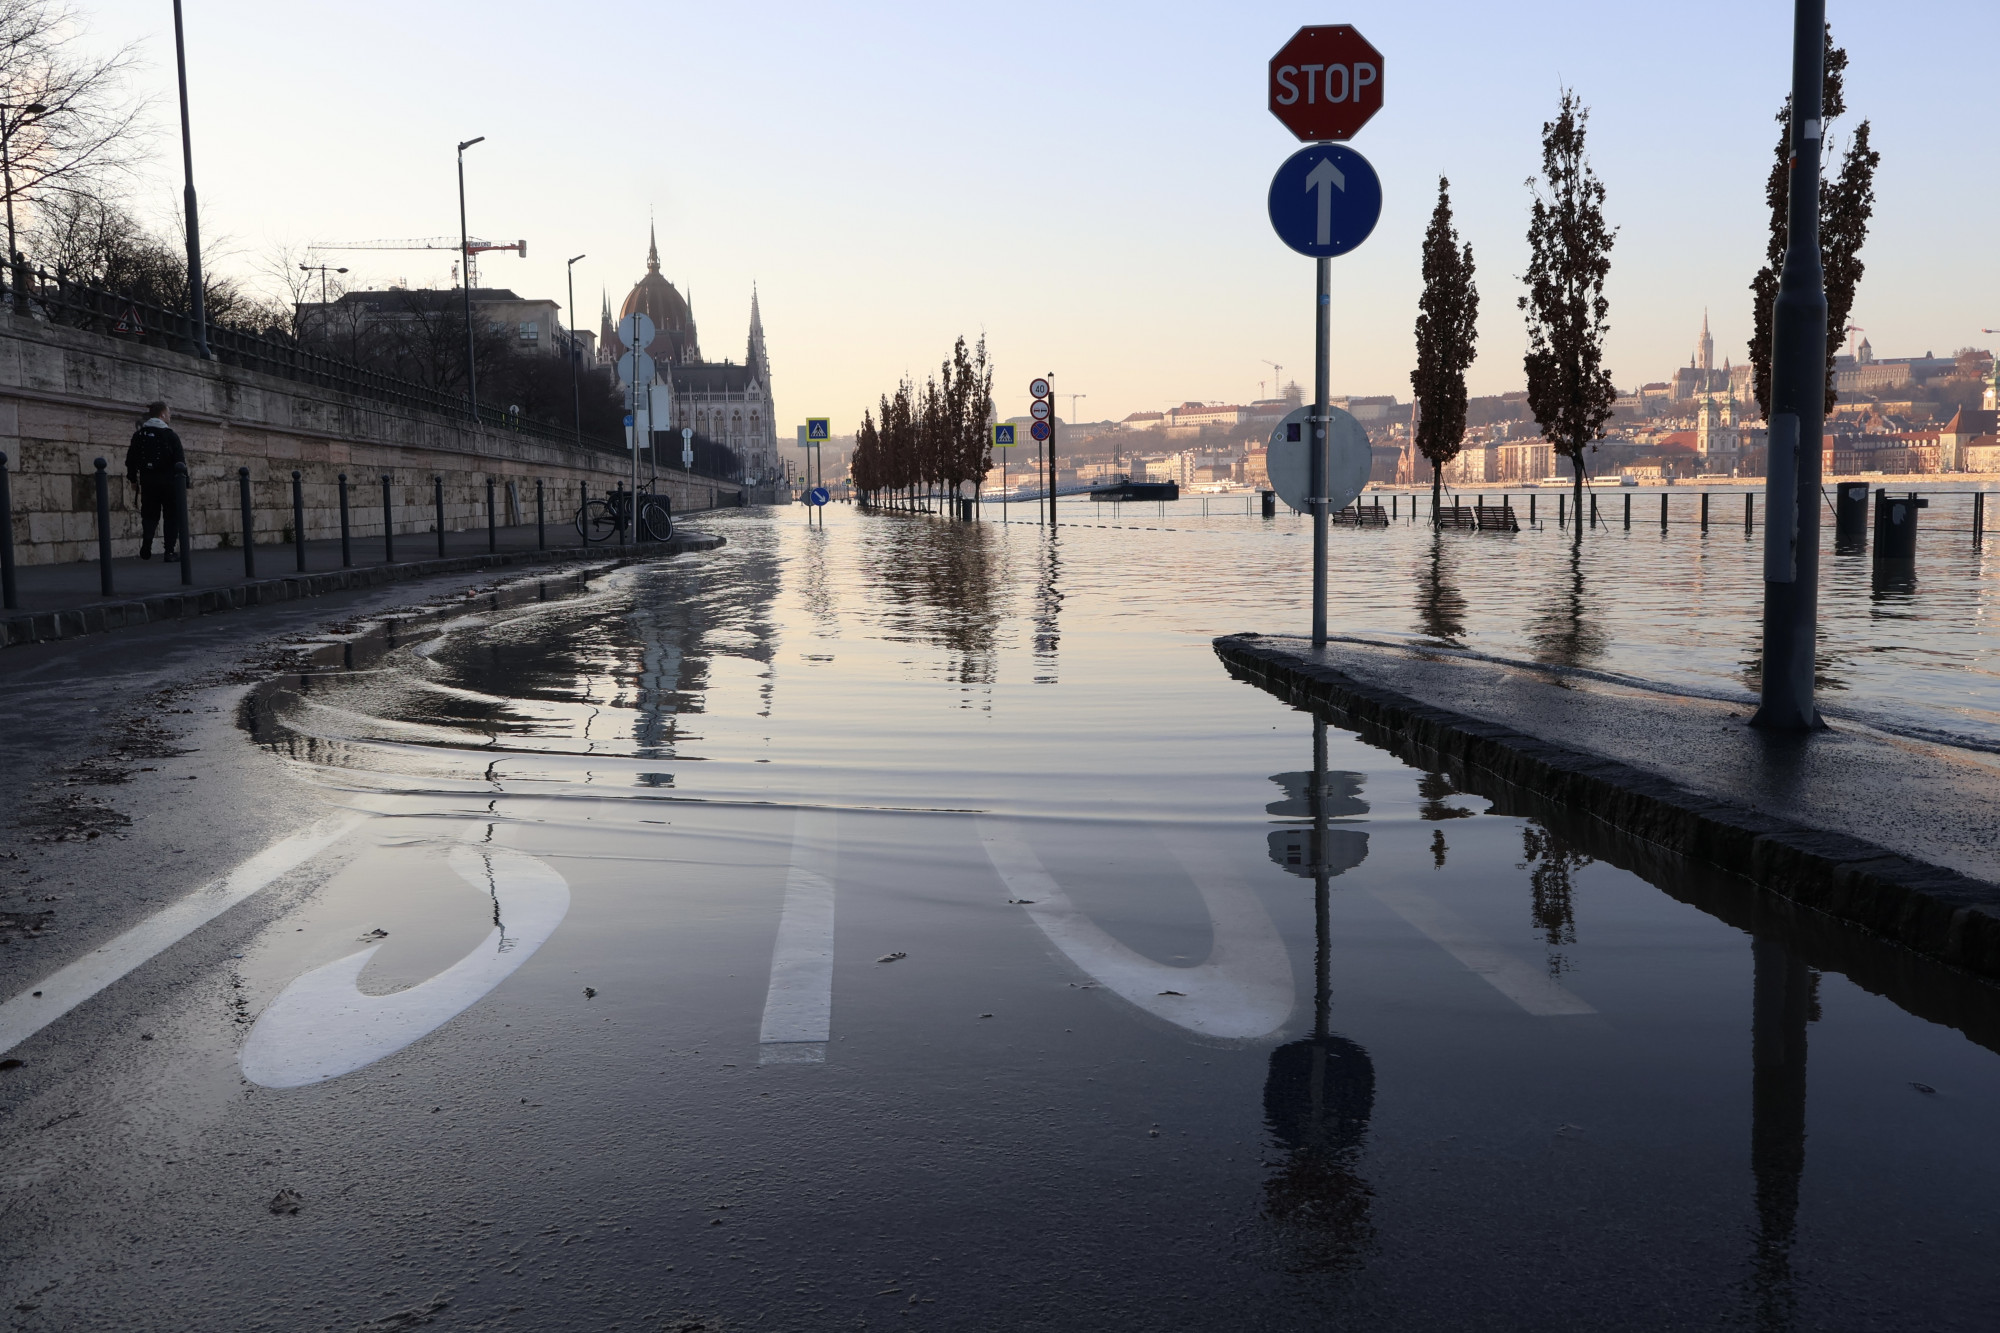 A mostani árvíz nem csak a klímaváltozás következménye, de növekedhet a téli árvizek kockázata ilyen kibocsátási szint mellett